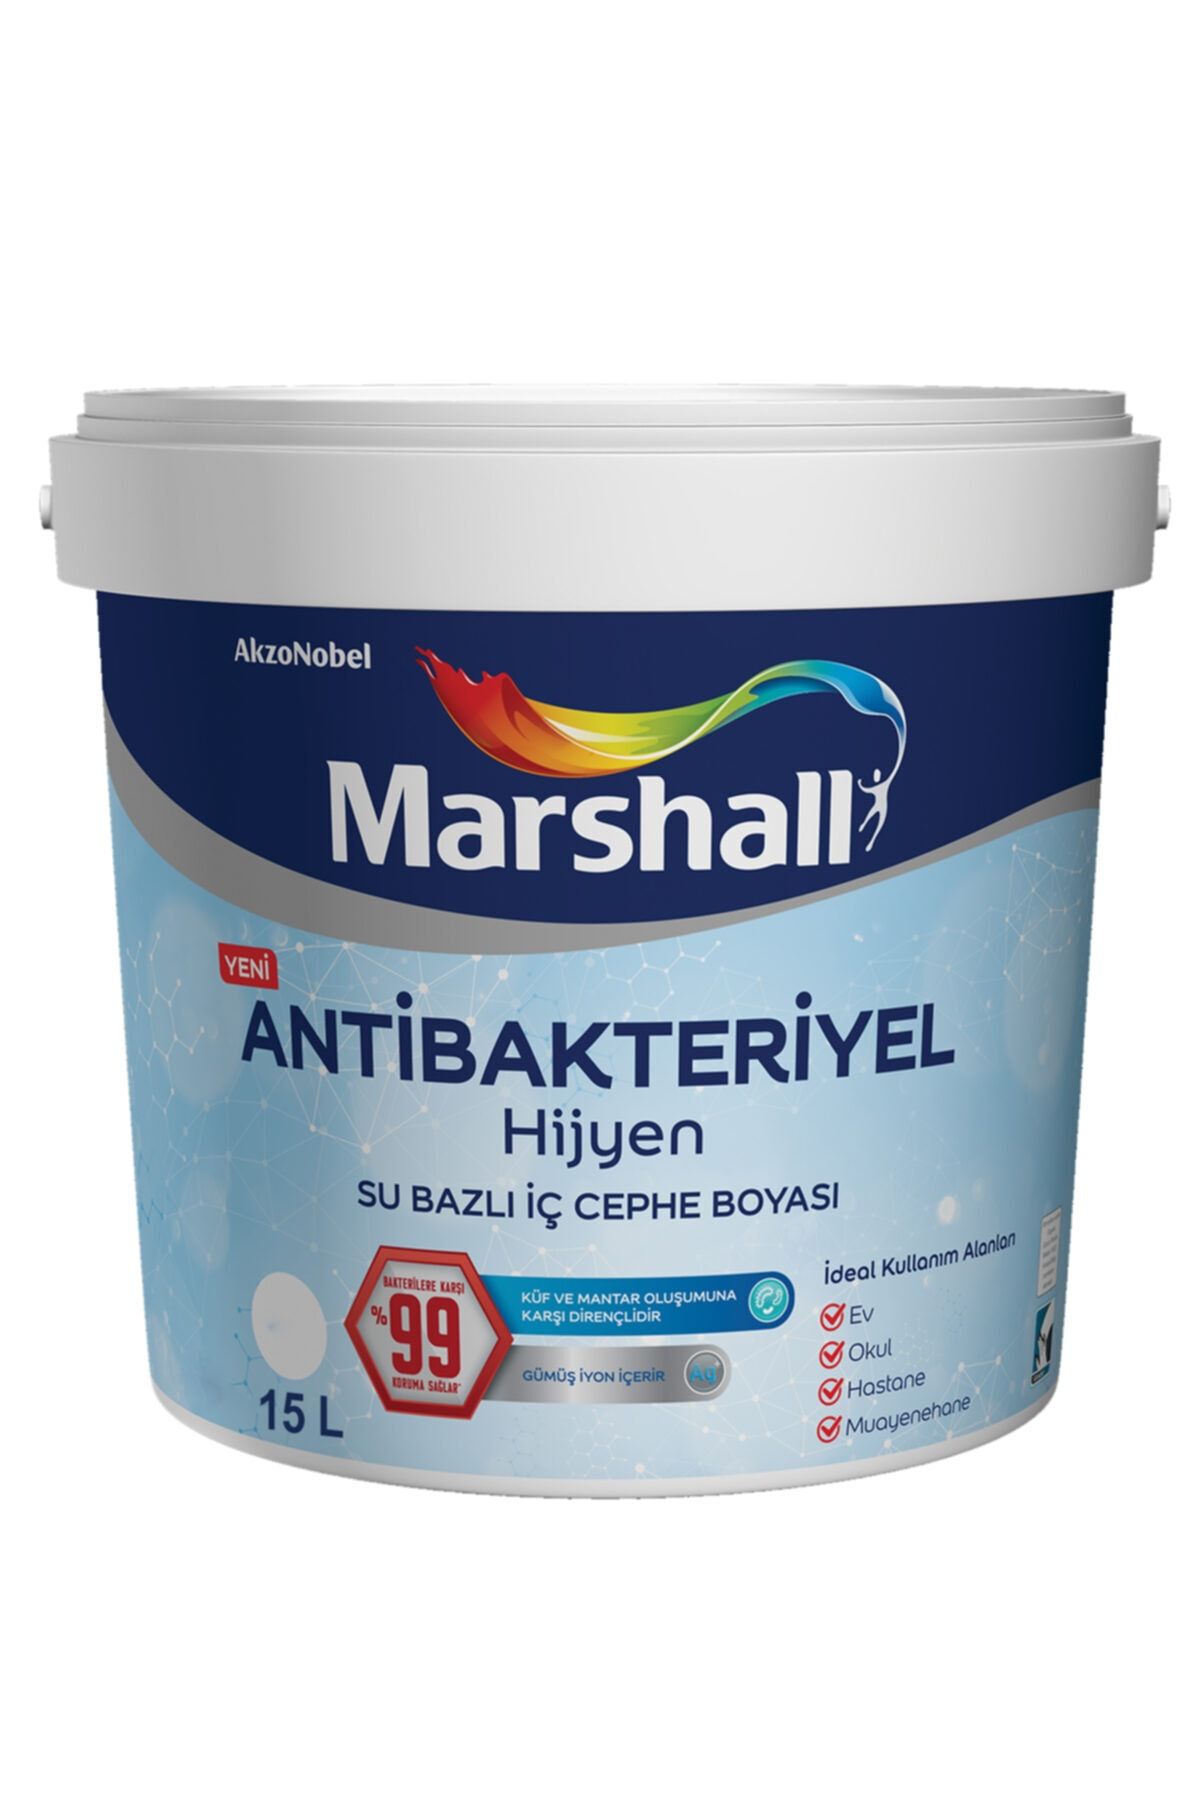 Marshall Antibakteriyel Hijyen Iç Cephe Boyası Bal Arısı 15 Lt (20 Kg)